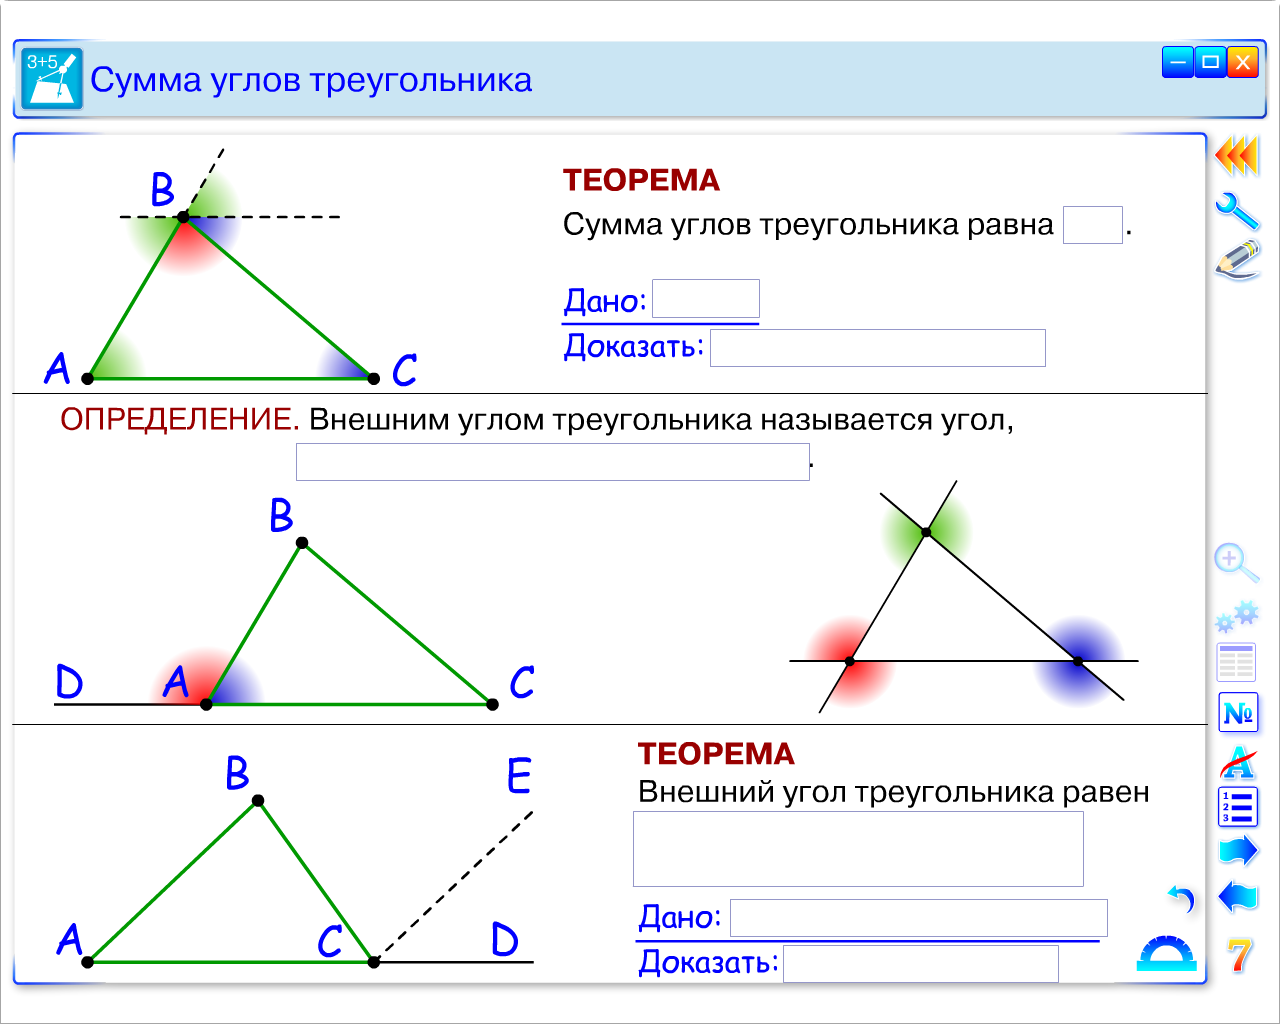 Урок геометрии в 7 классе по теме: «Применение теоремы о сумме углов треугольника и теоремы о внешнем угле треугольника»